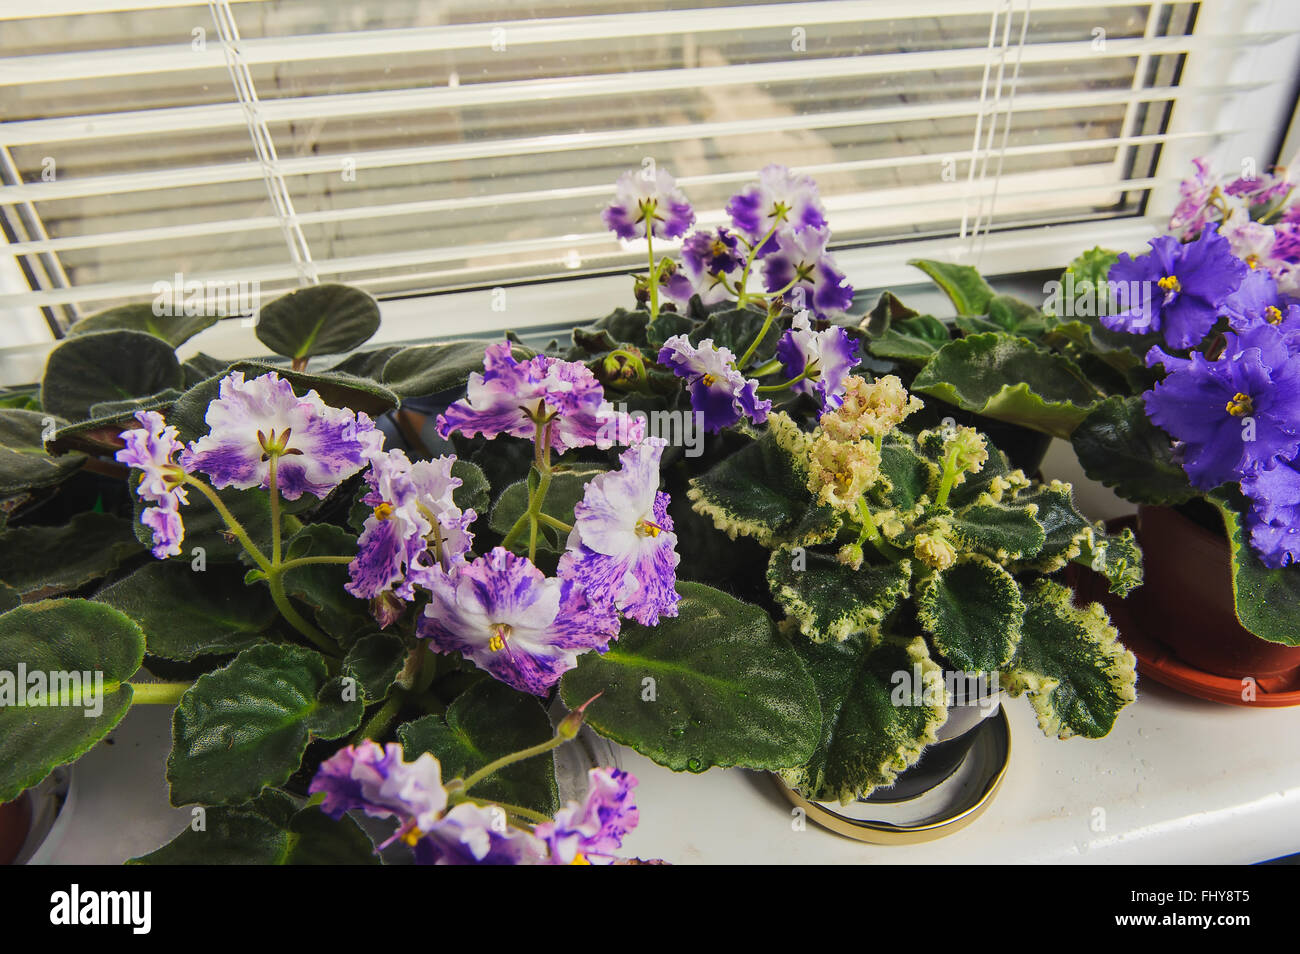 Violette africaine ou Saintpaulia sur l'arrière-plan de la fenêtre avec jalousie, obturateur, plantes d'intérieur. Vue de dessus. Banque D'Images